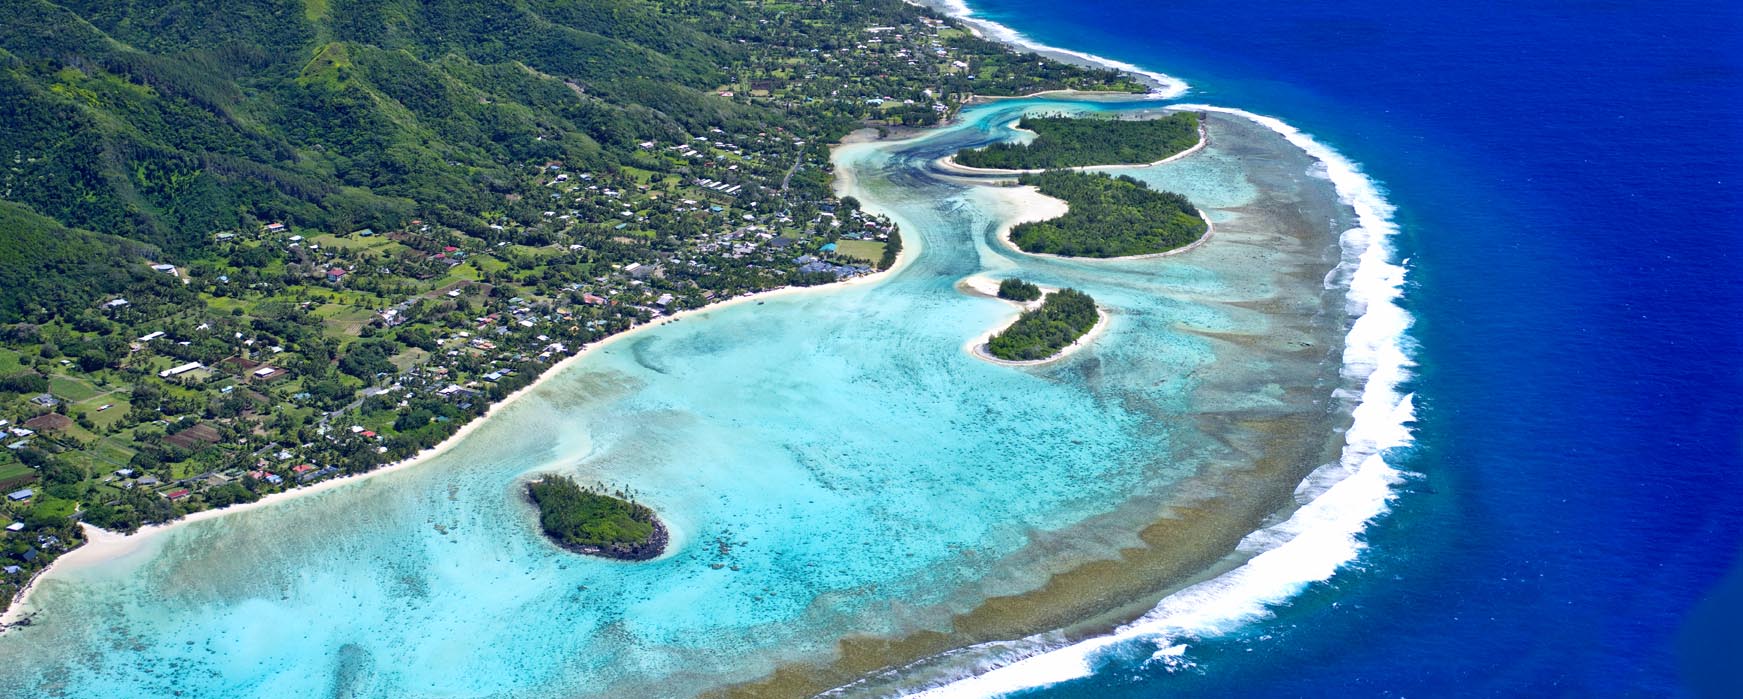 モデルプラン ラロトンガ島に滞在 南太平洋の楽園クック諸島9日間 ティースタイル オーダーメイドツアー